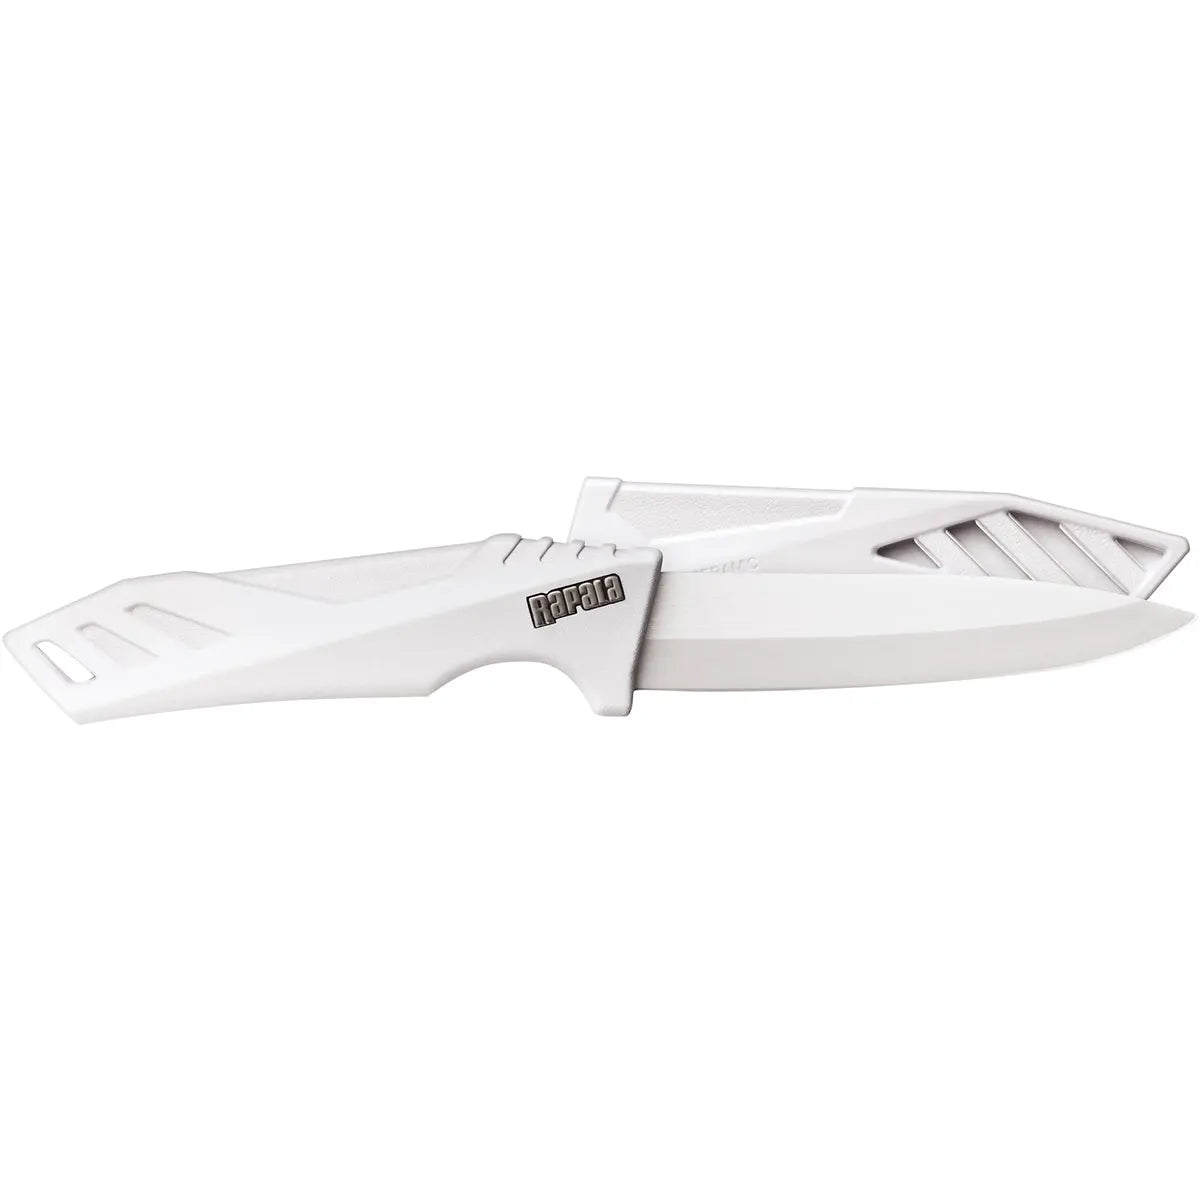 Rapala 4" Ceramic Knife - White Rapala